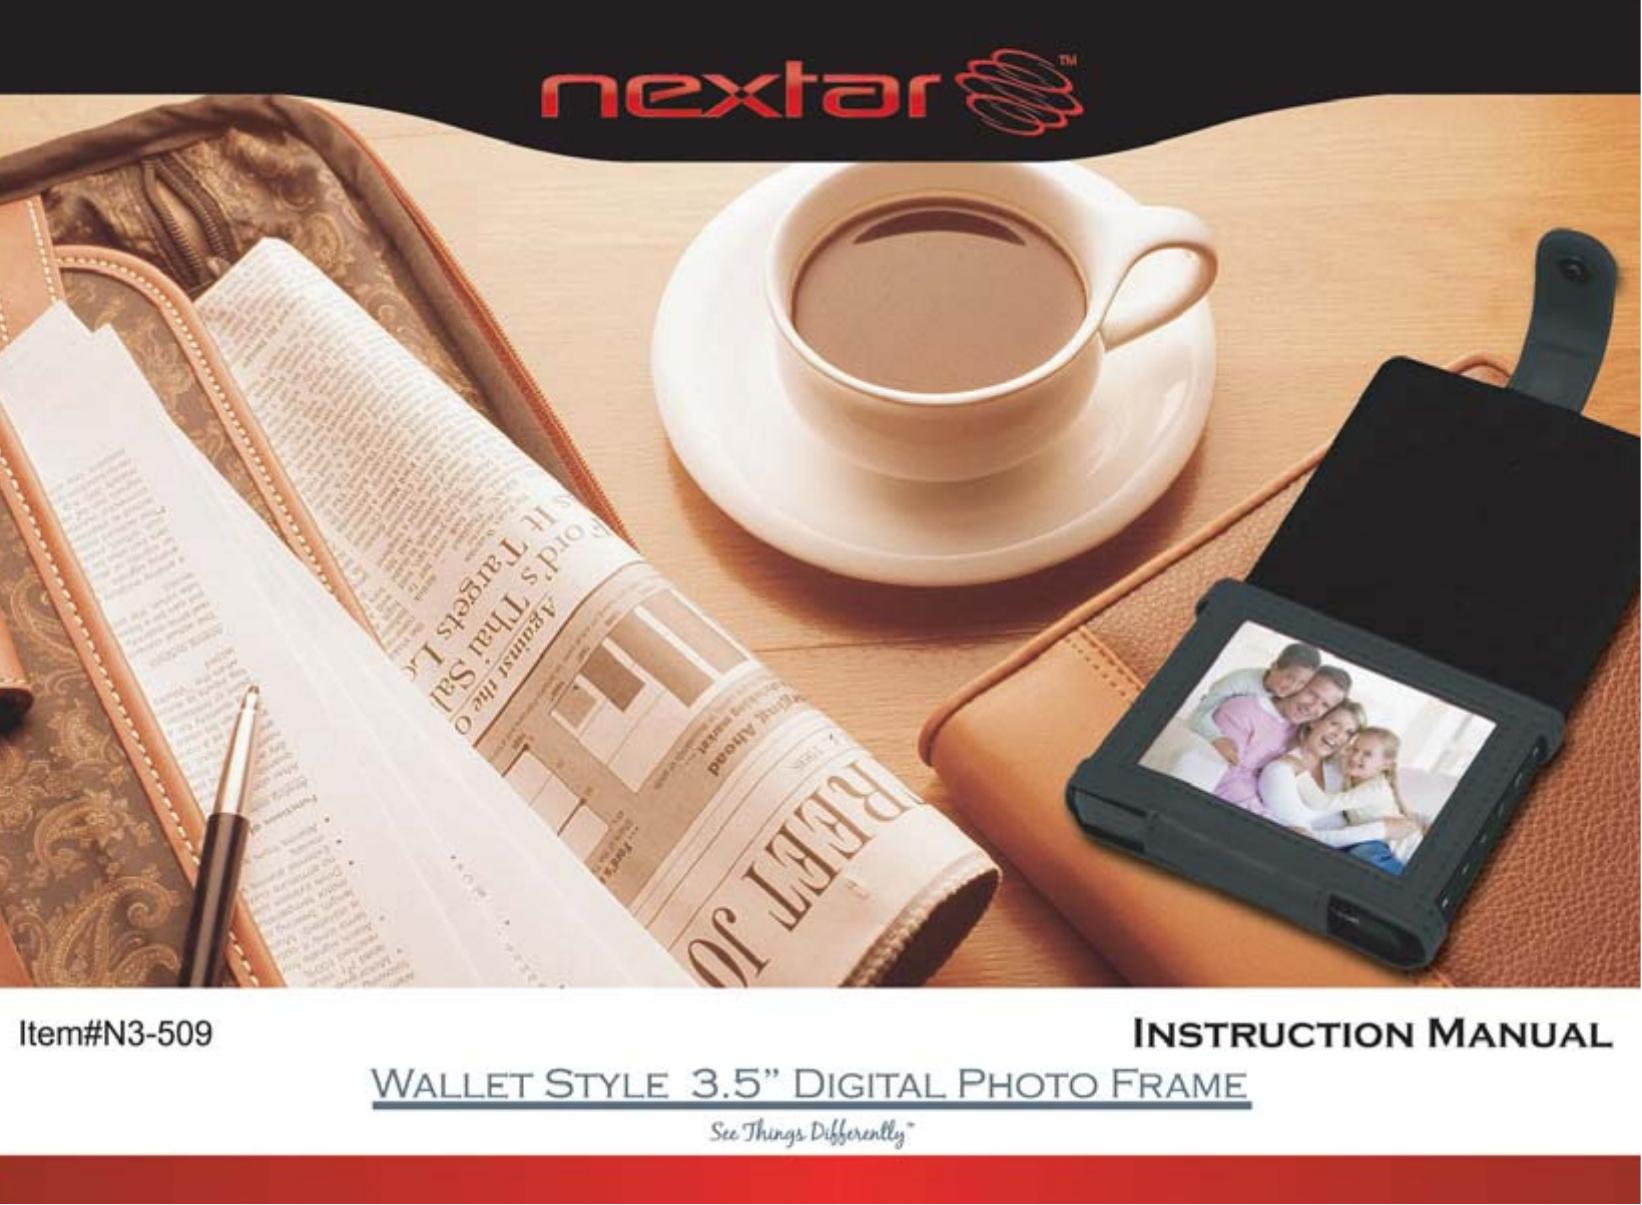 Nextar N3-509 Digital Photo Frame User Manual